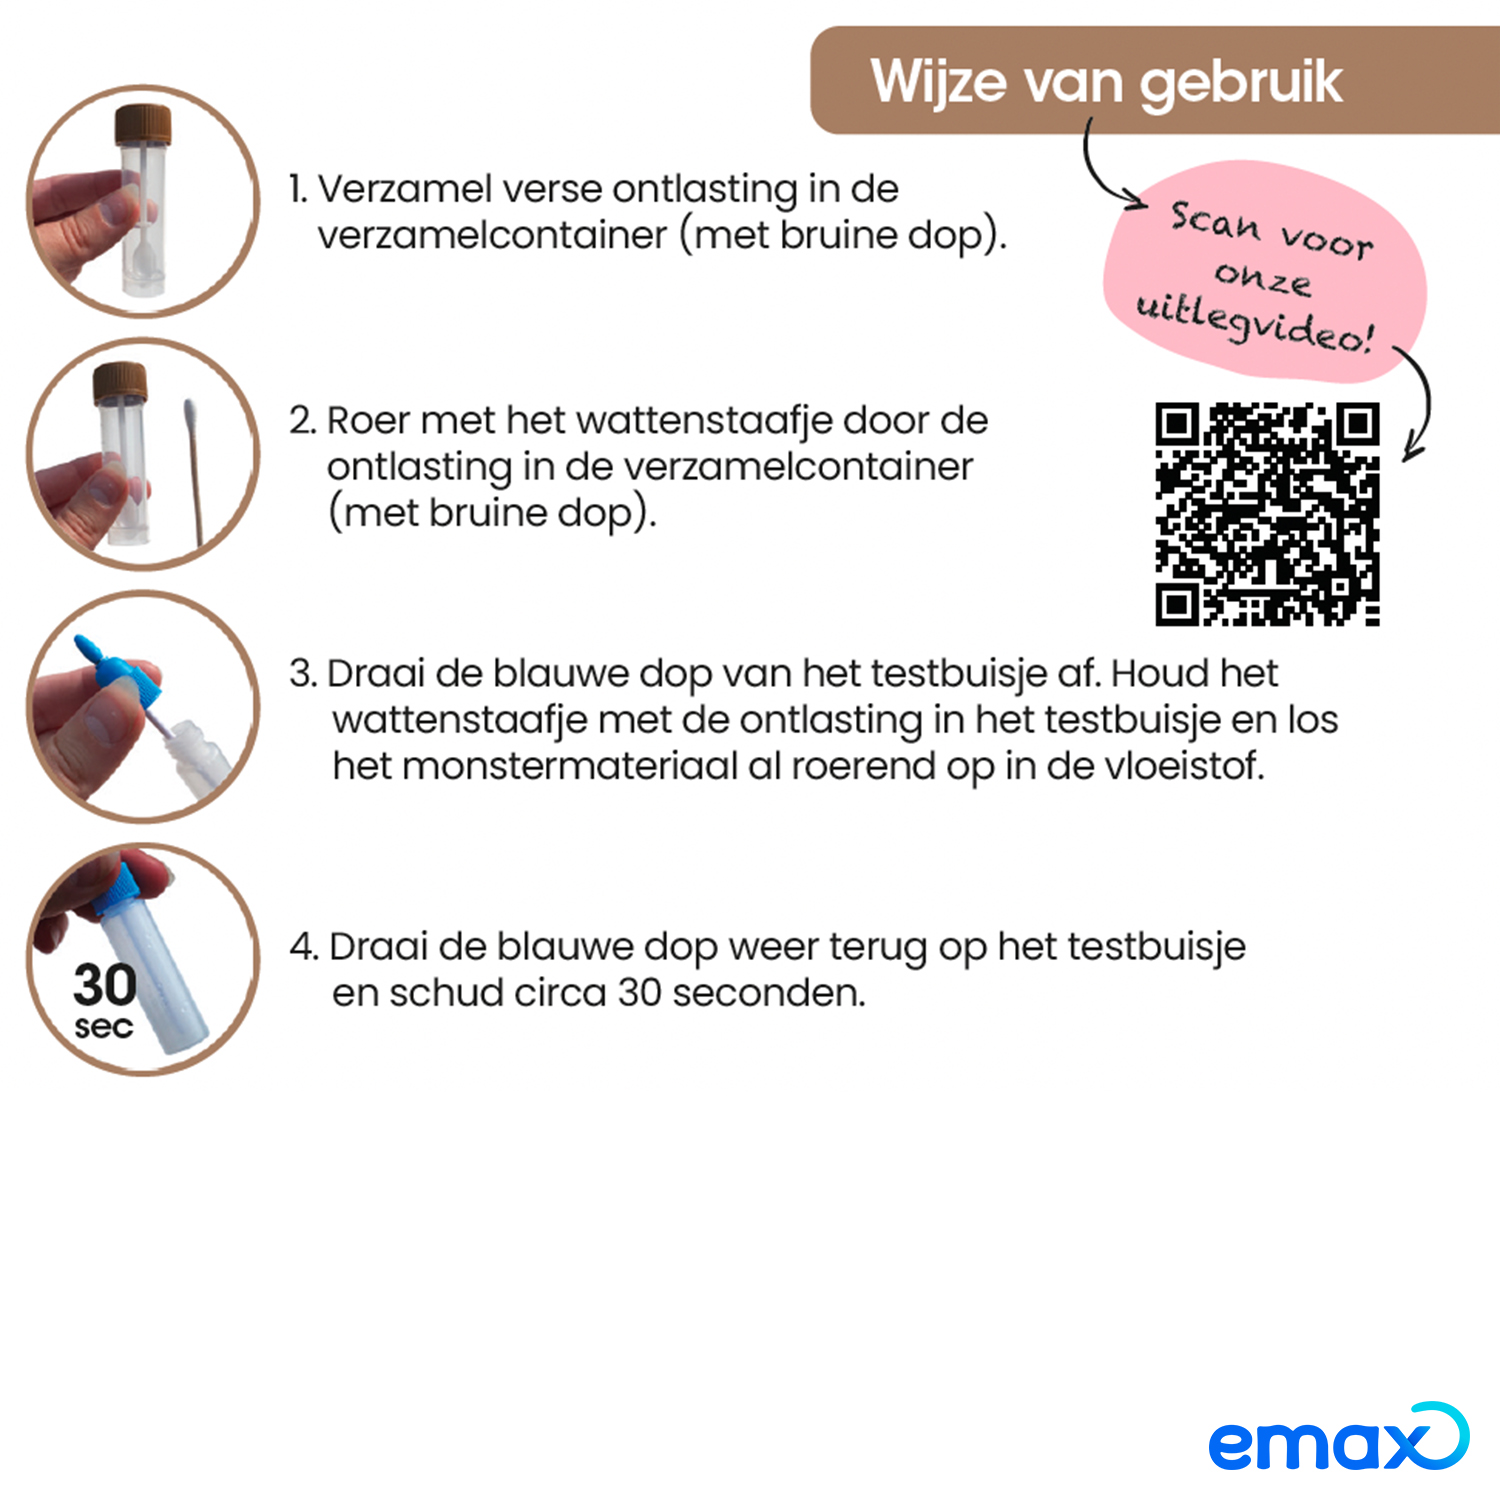 No Worm Diacur Giardiatest voor honden en katten - Emax.nl